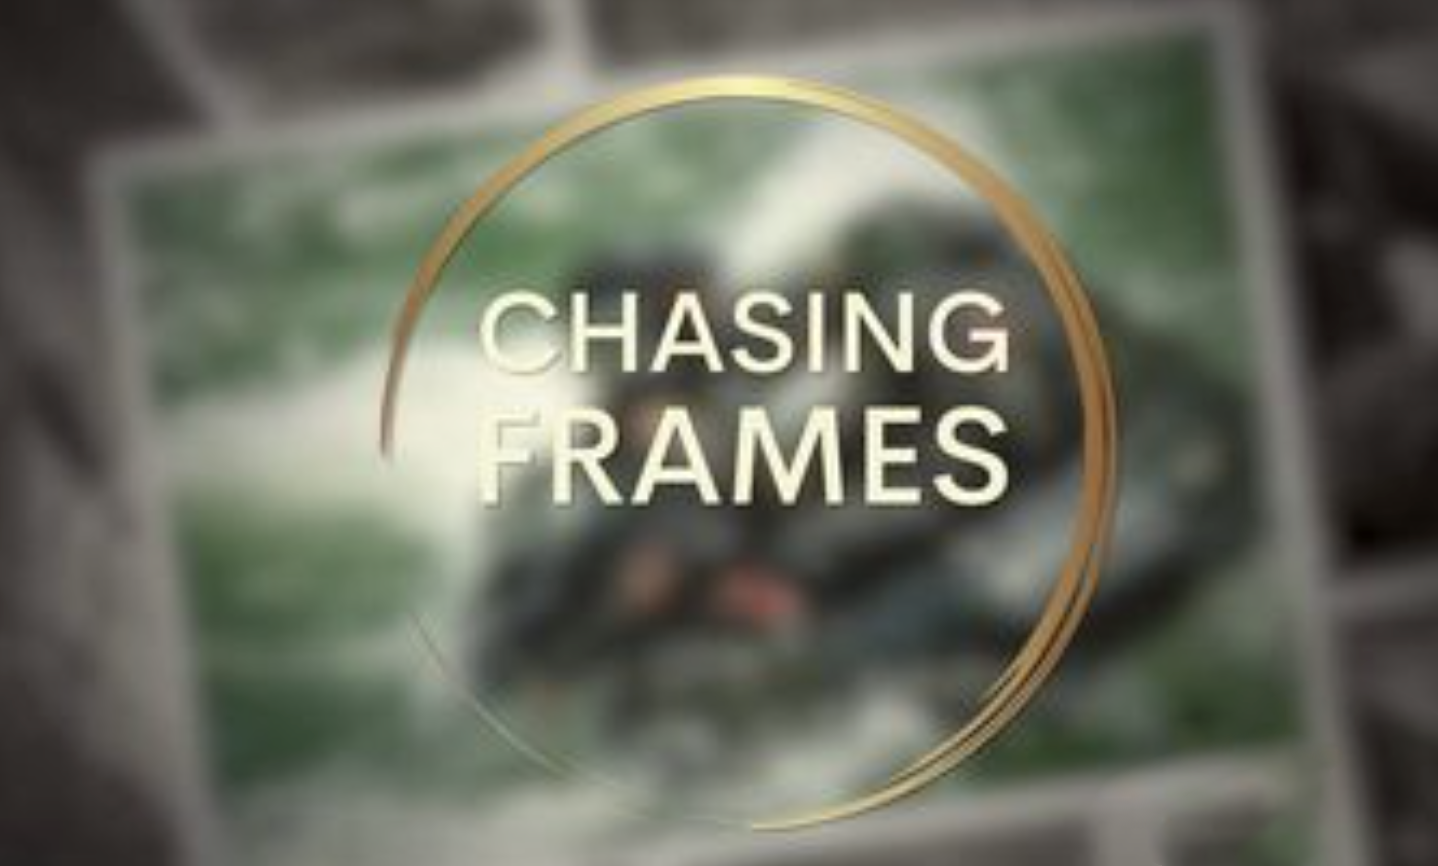 Chasing Frames with Tamara Lackey